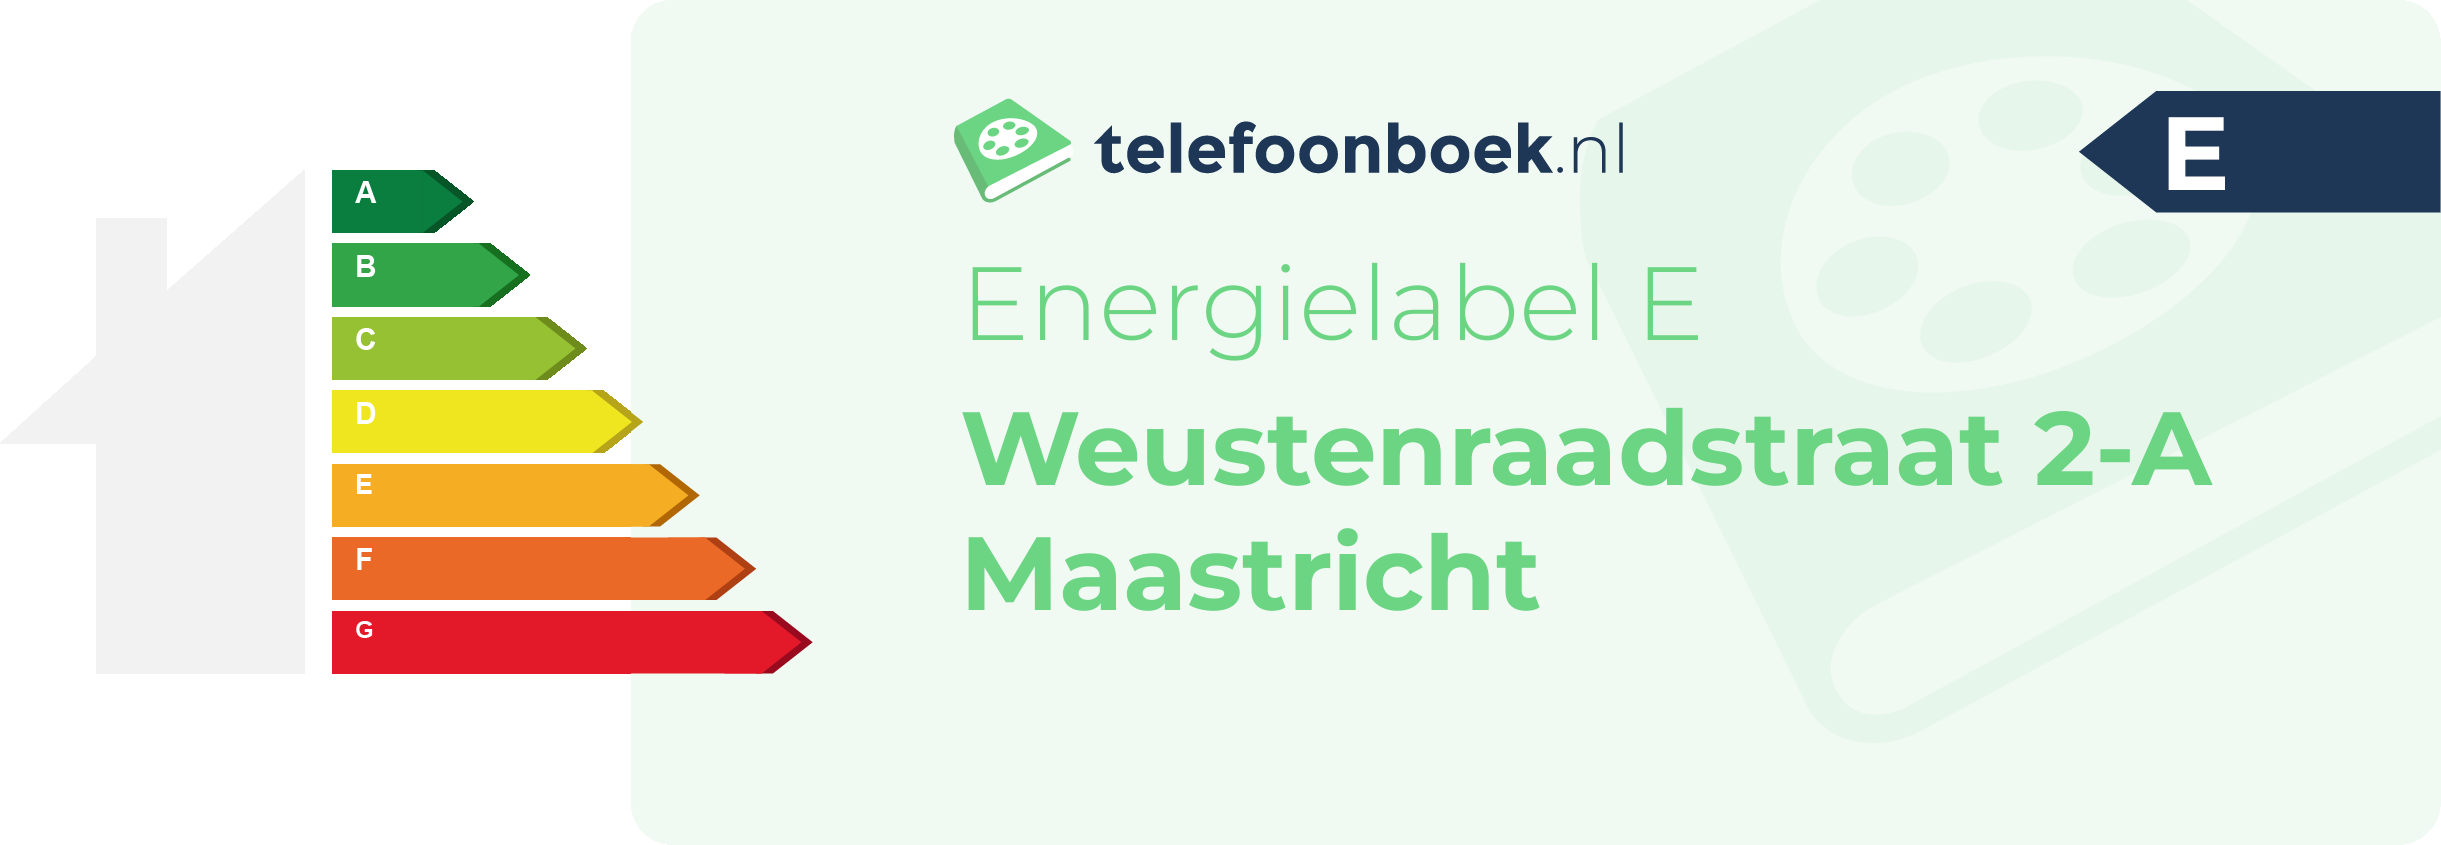 Energielabel Weustenraadstraat 2-A Maastricht